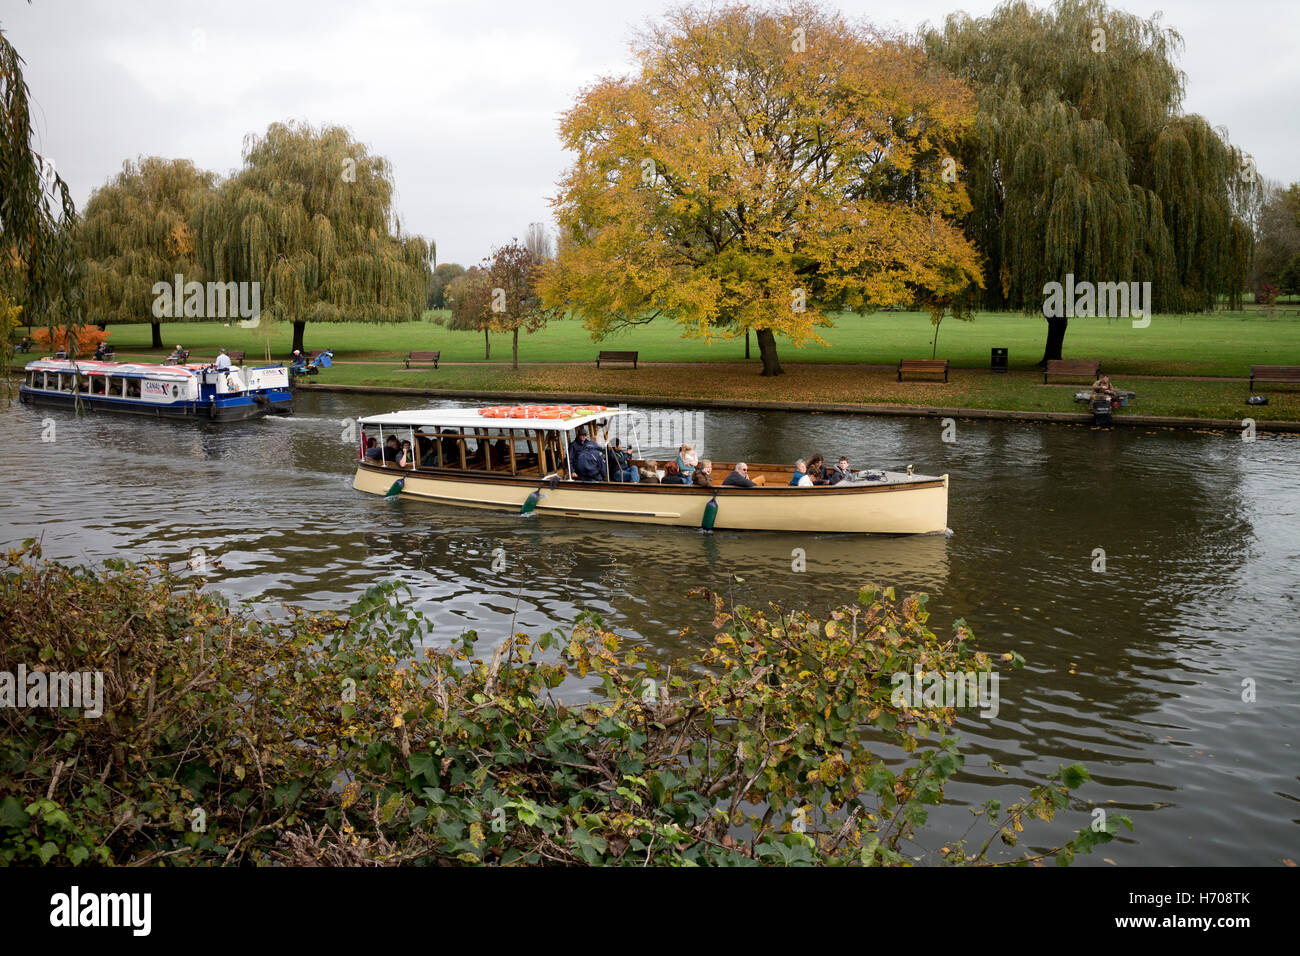 Gita in barca sul fiume Avon in autunno, Stratford-upon-Avon, Regno Unito Foto Stock